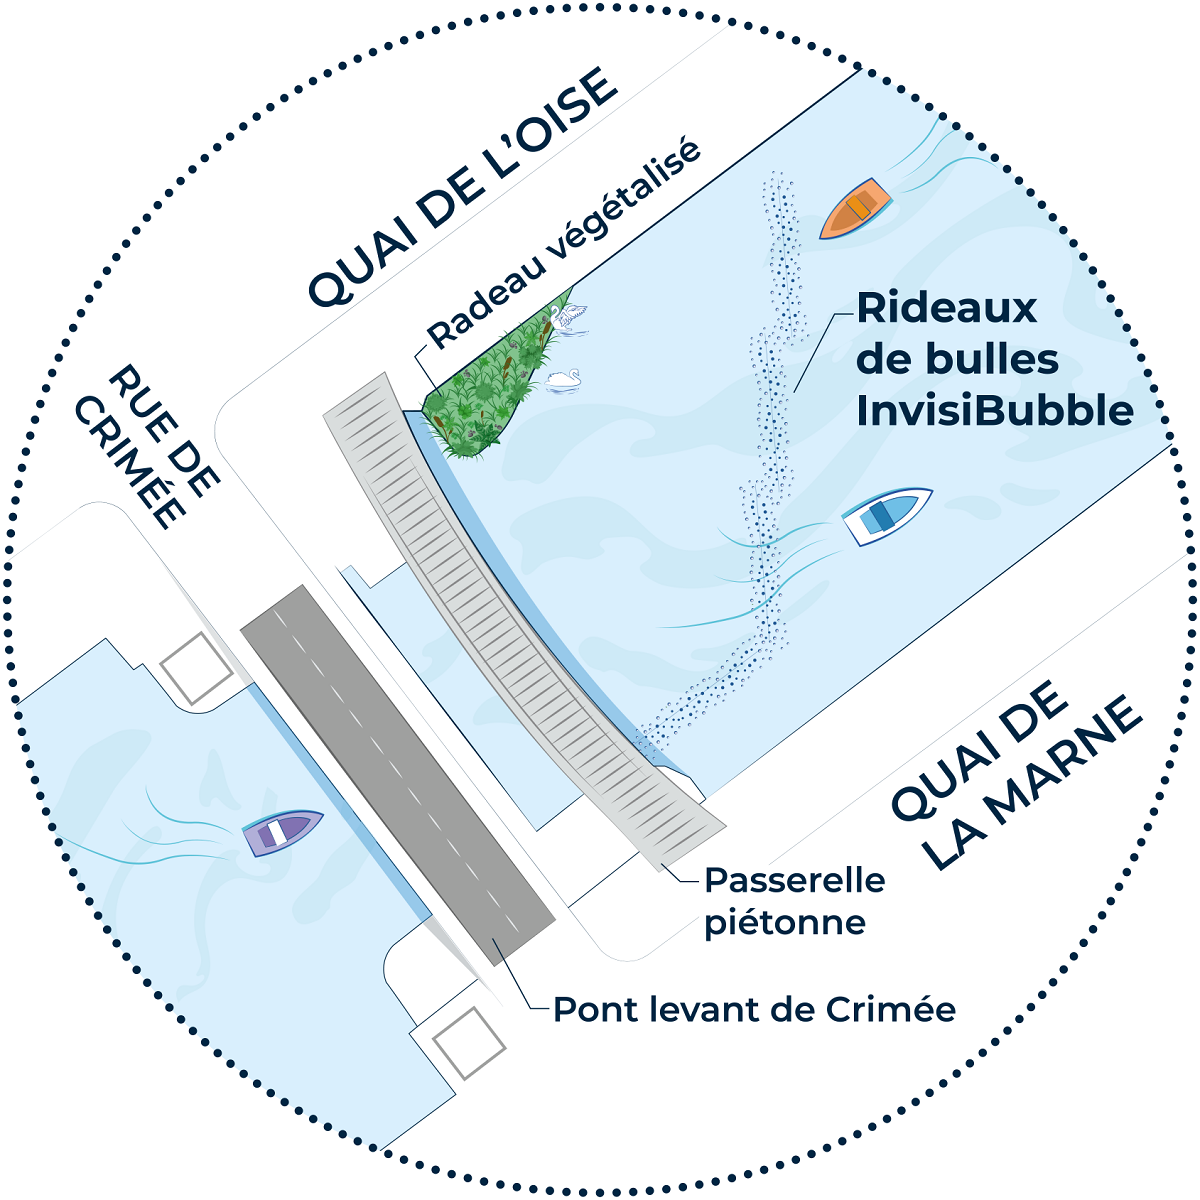 Visuel du plan de déploiement du rideau de bulles, qui sera situé entre le quai de la Marne et celui de l'Oise, au niveau du pont de Crimée